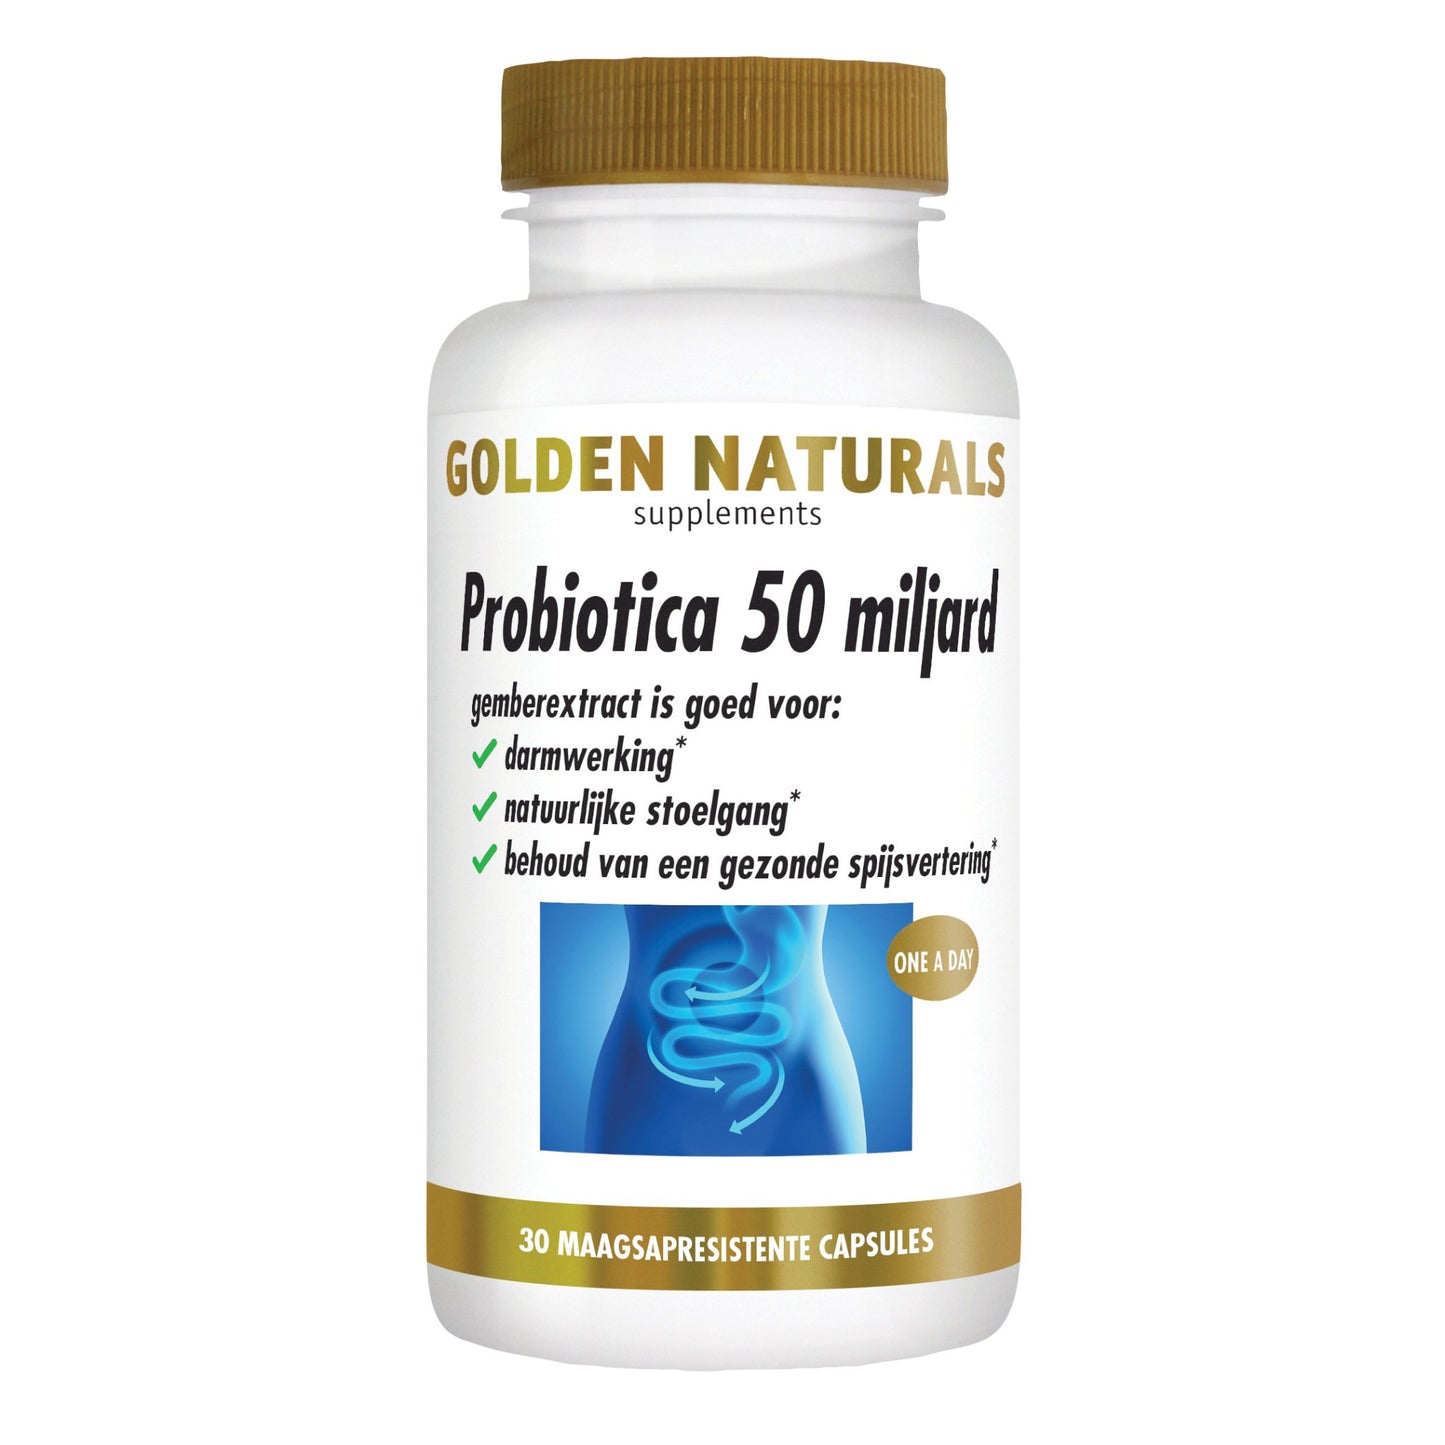 Probiotica 50 miljard - 30 - veganistische maagsapresistente capsules Supplement Golden Naturals   